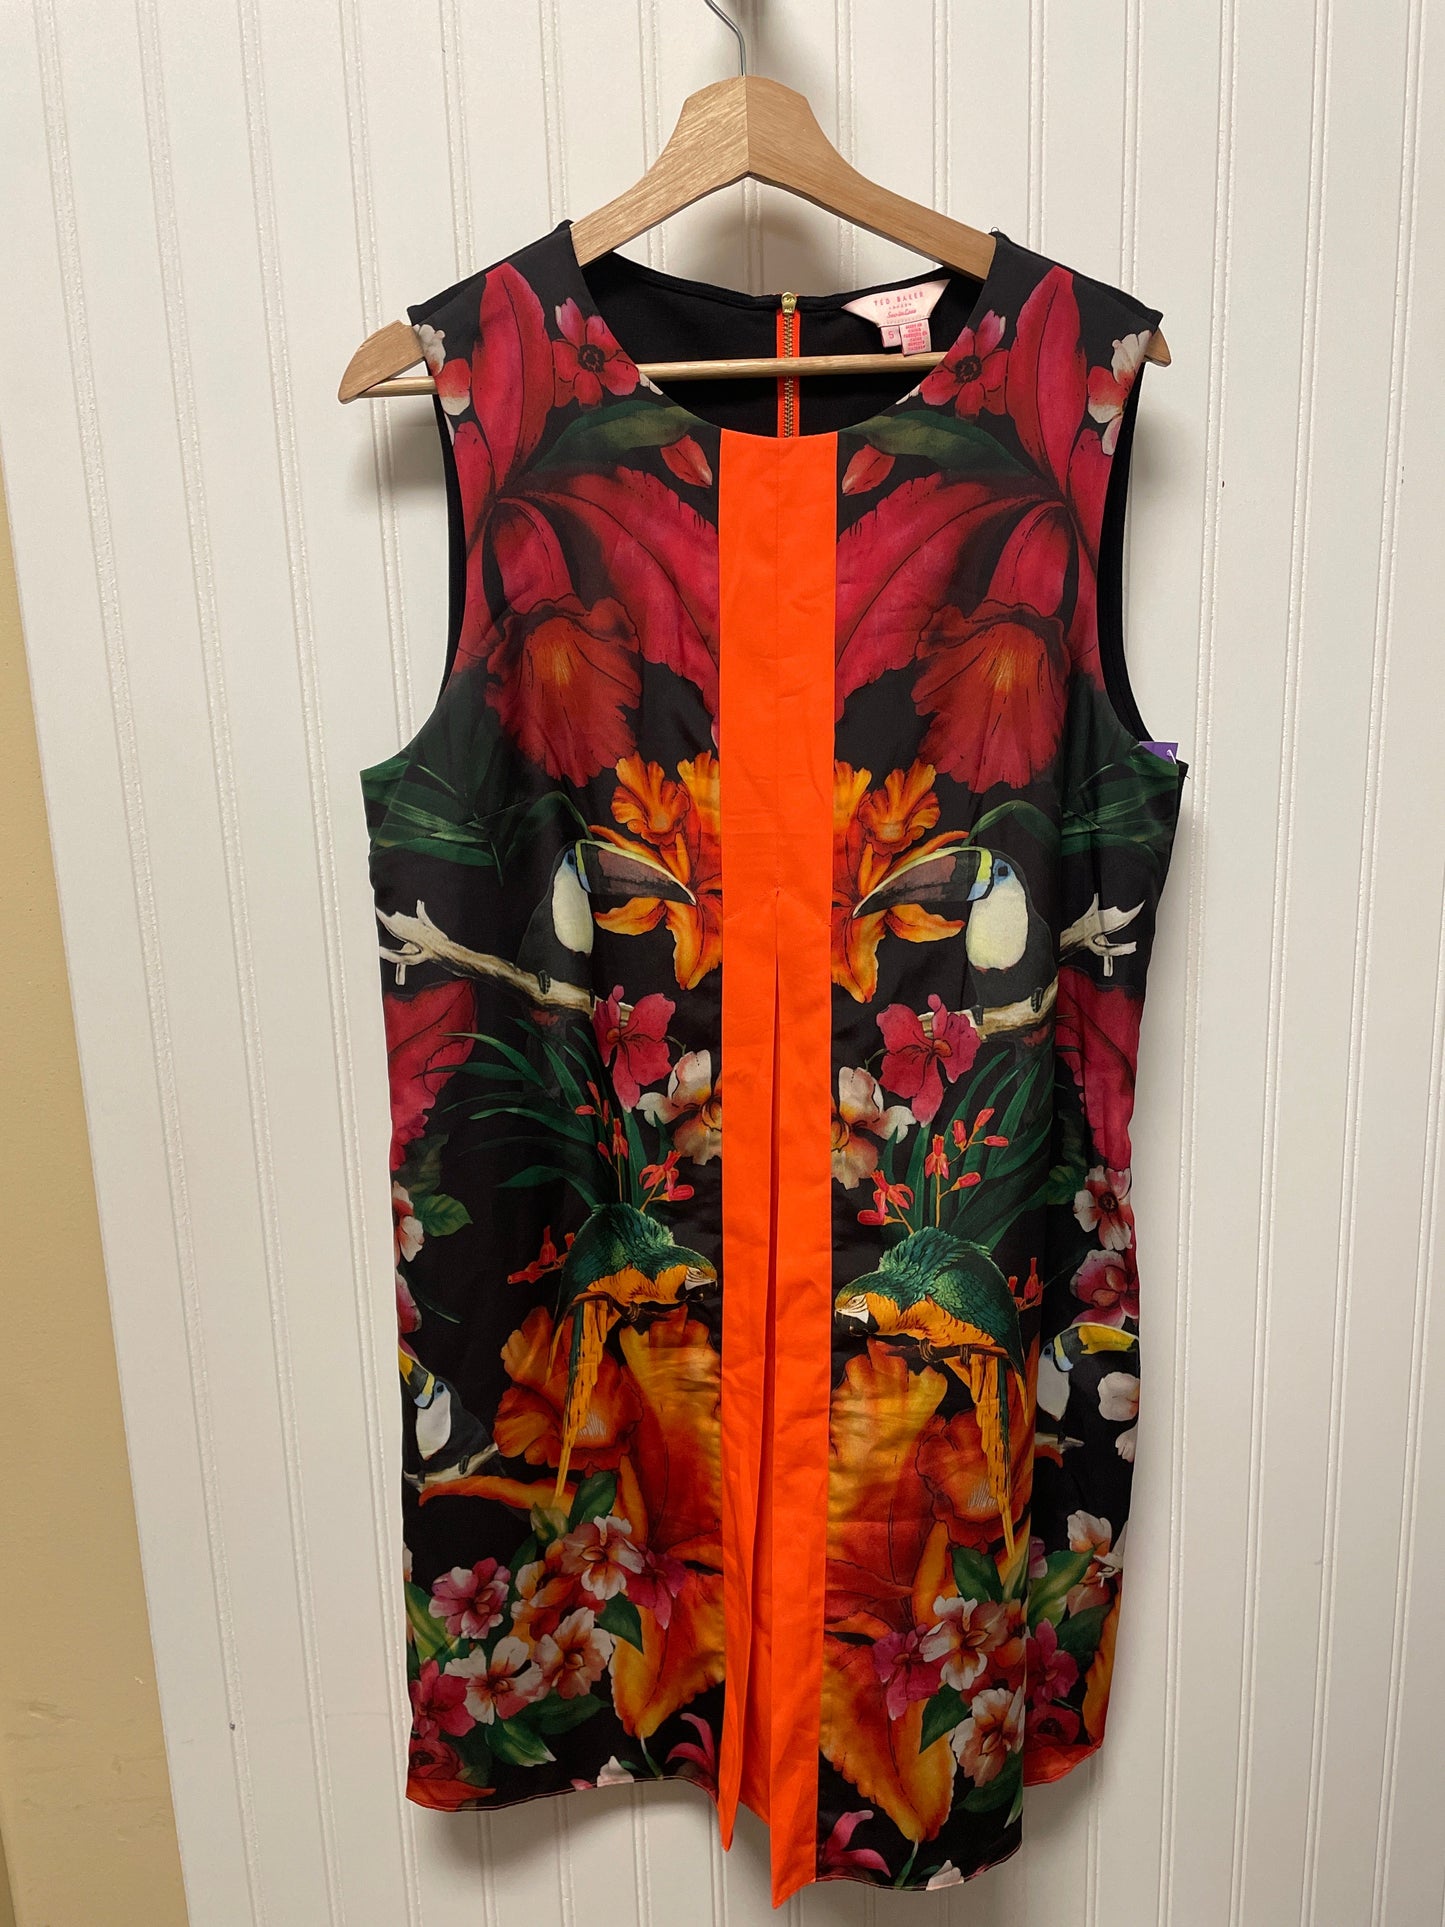 Tropical Print Dress Designer Ted Baker, Size 5